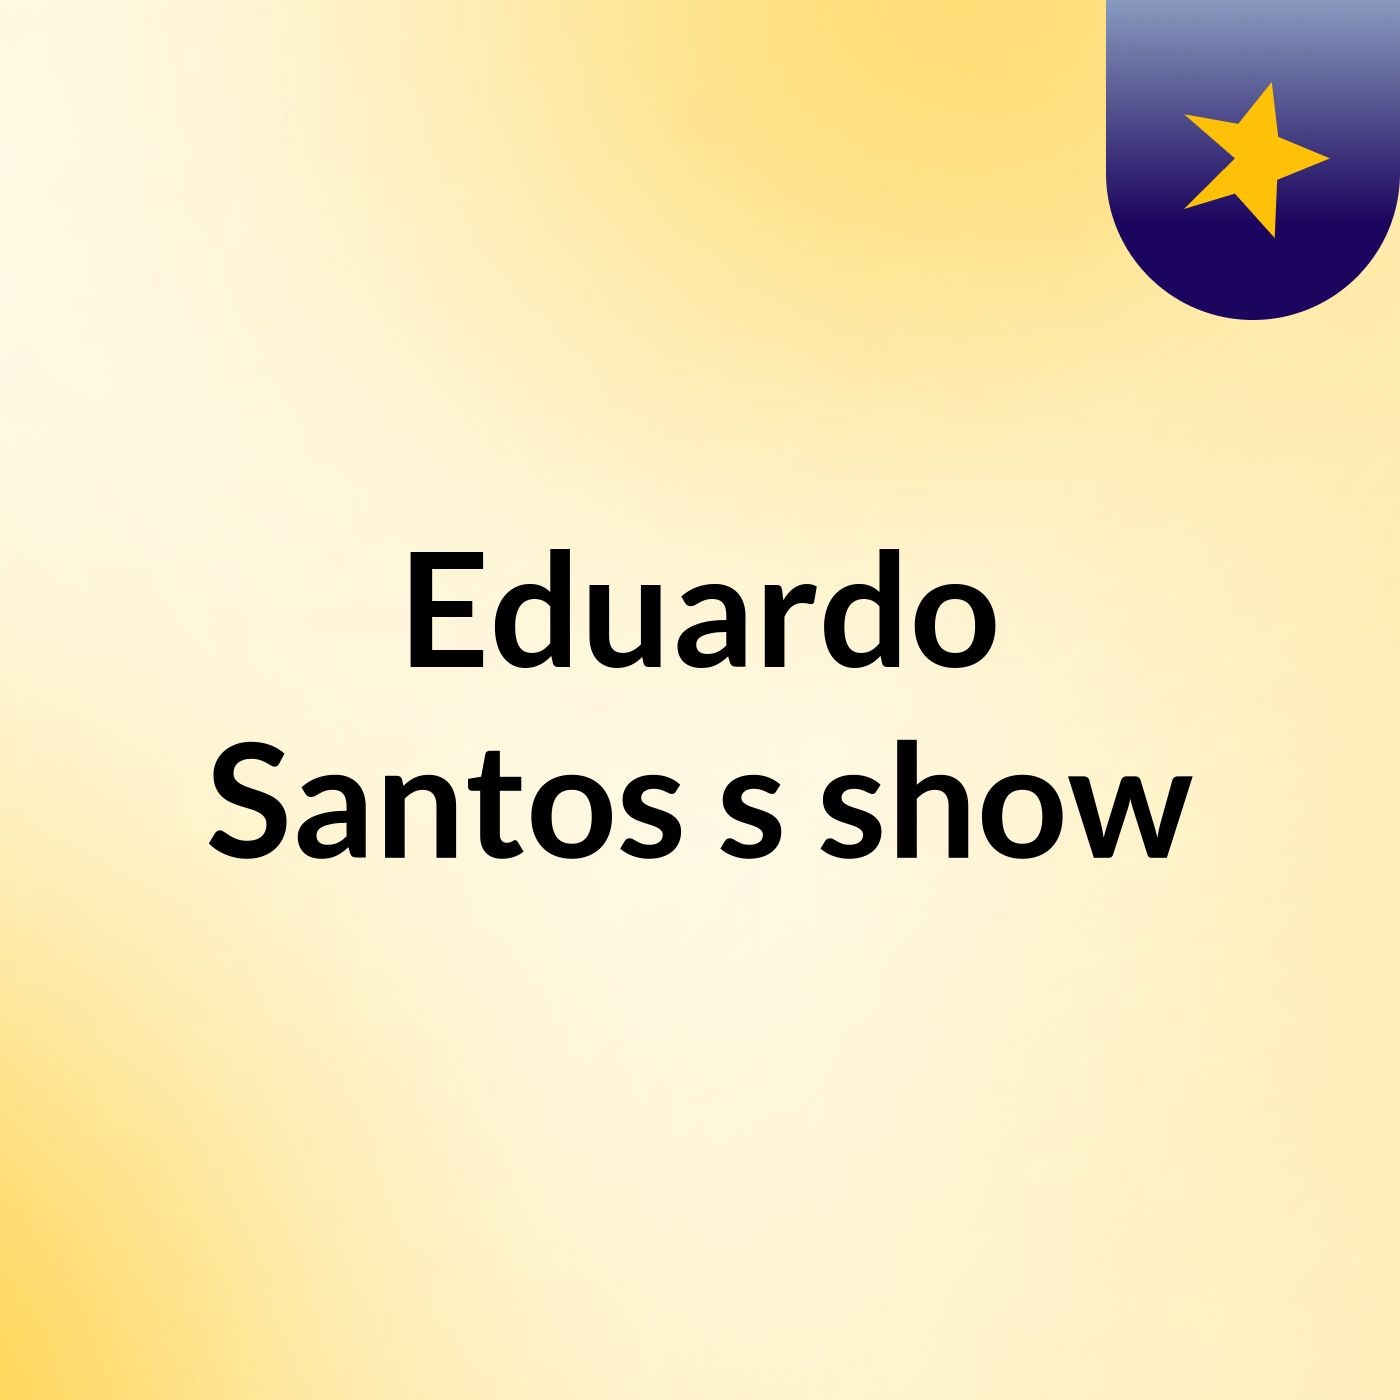 Episódio 24 - Eduardo Santos's show